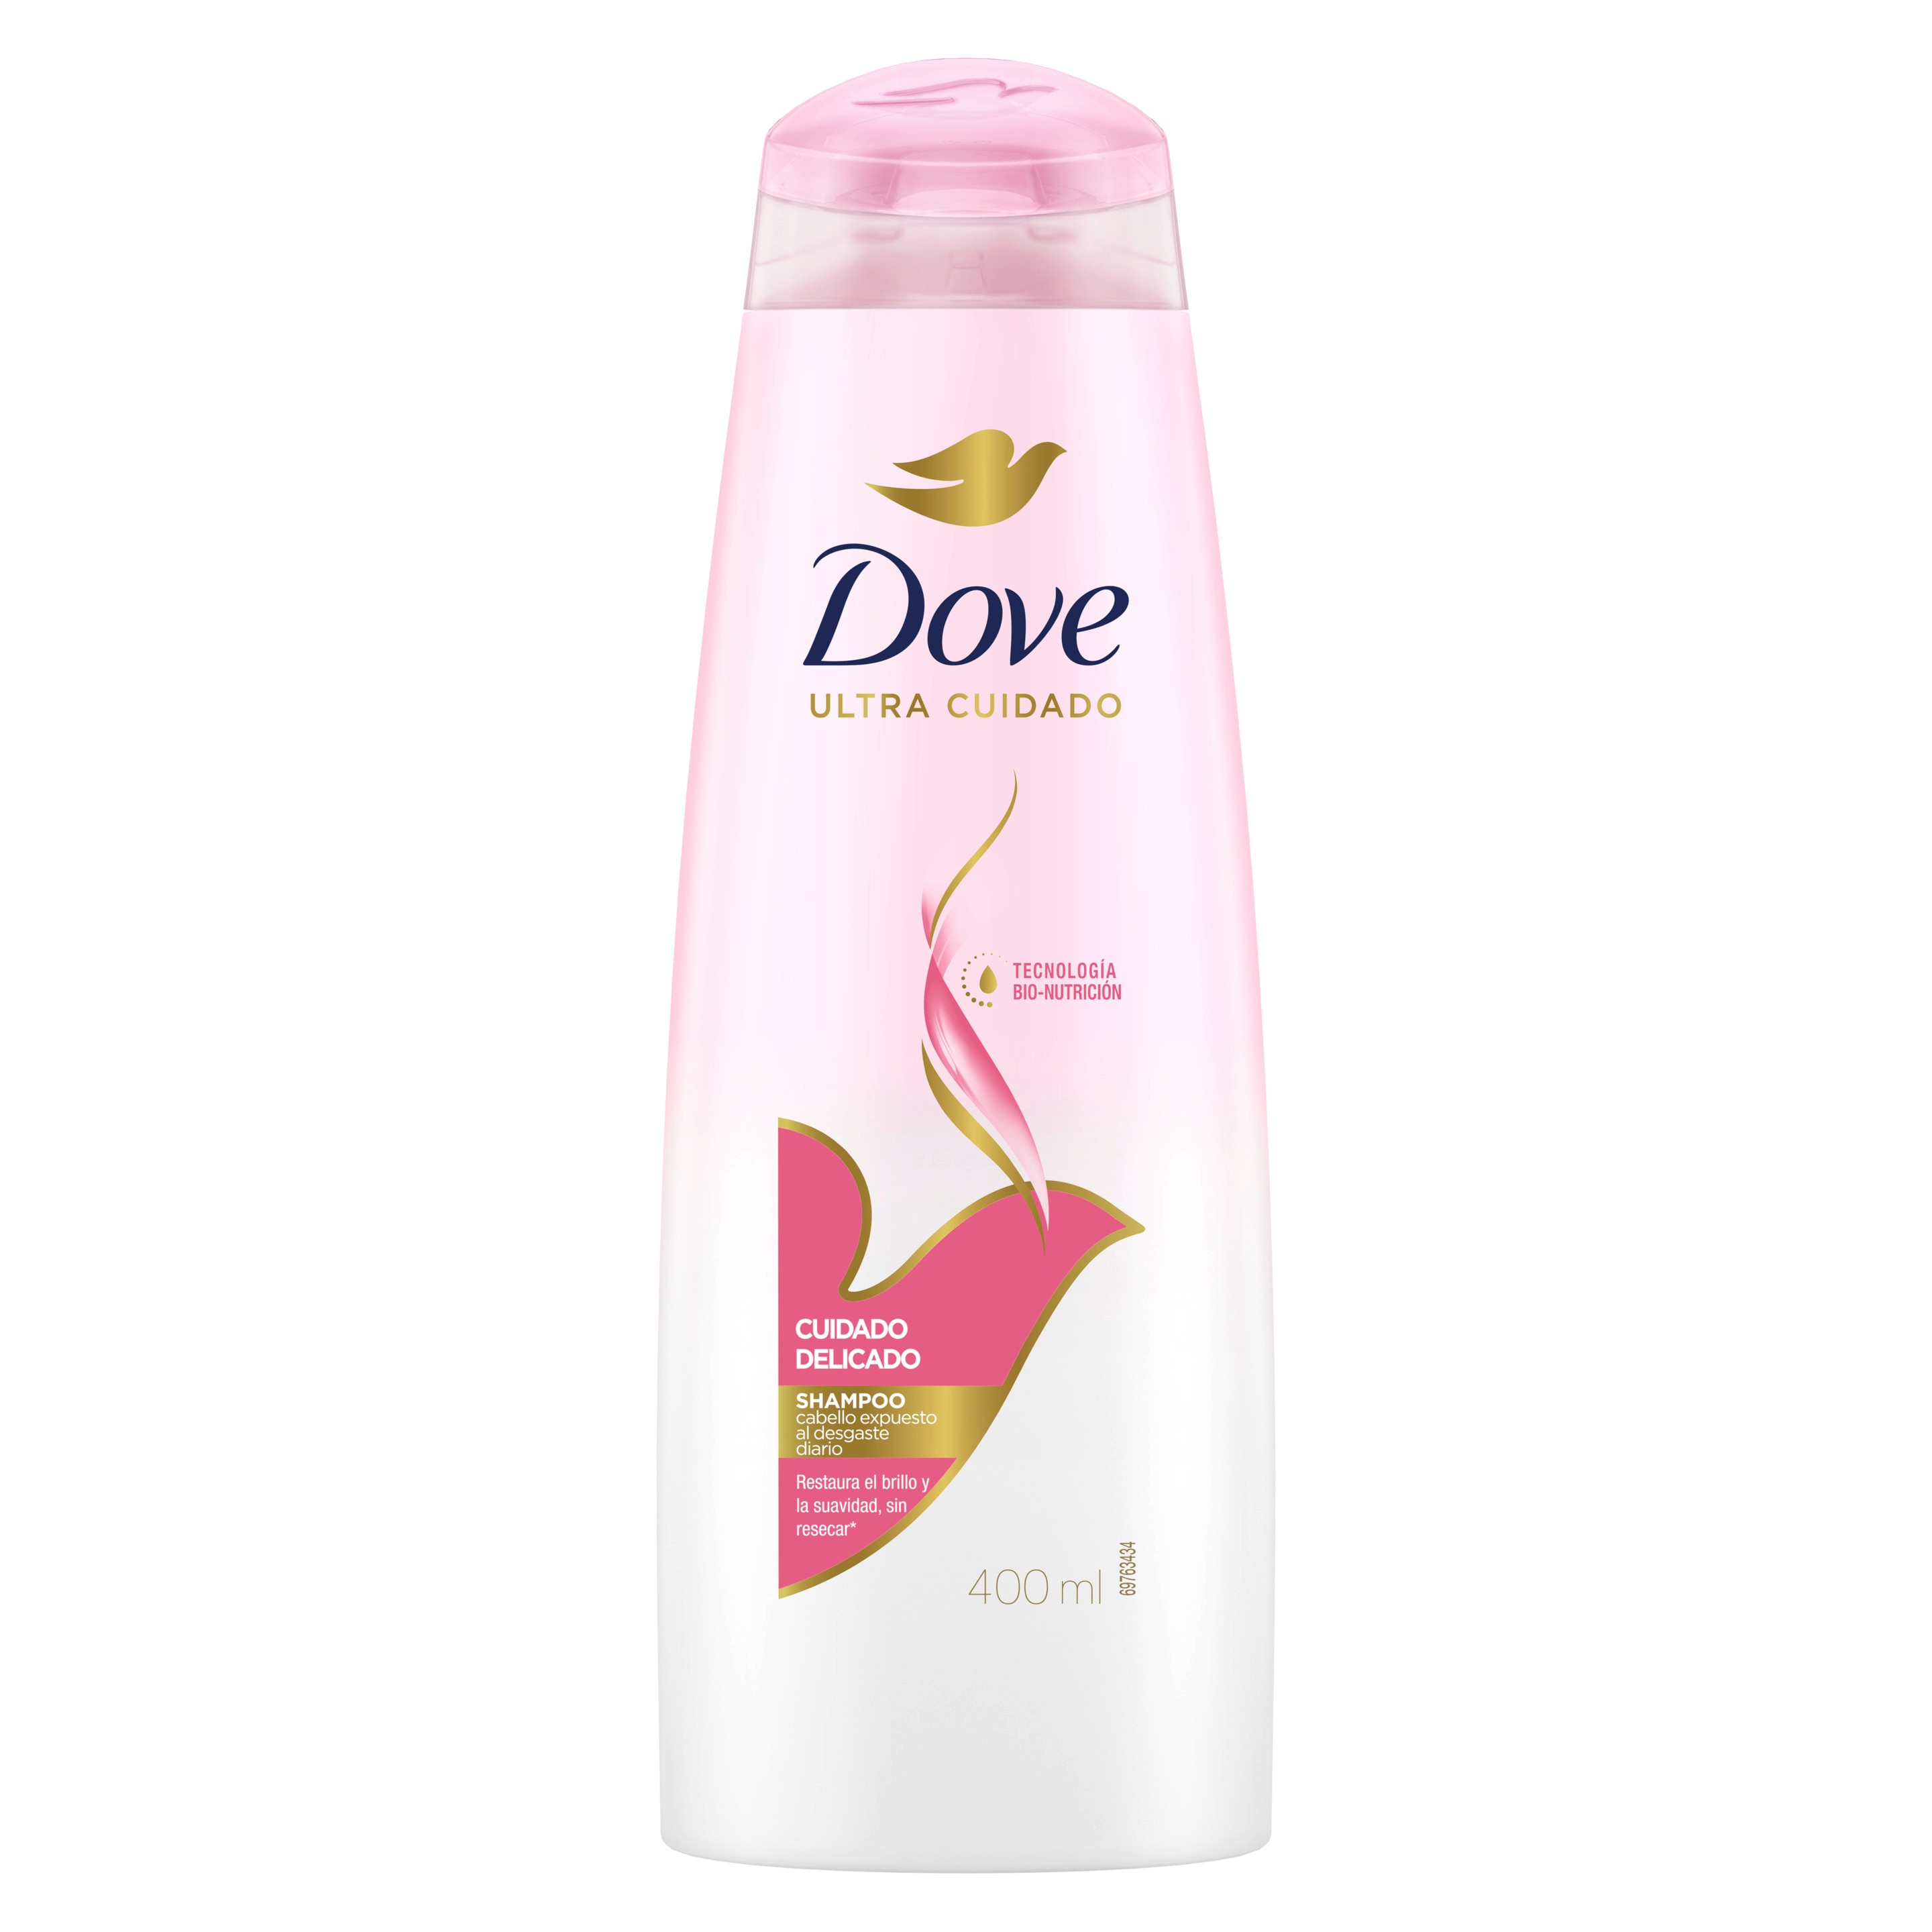 Envase de Dove shampoo Cuidado Delicado - Para darle brillo y suavidad